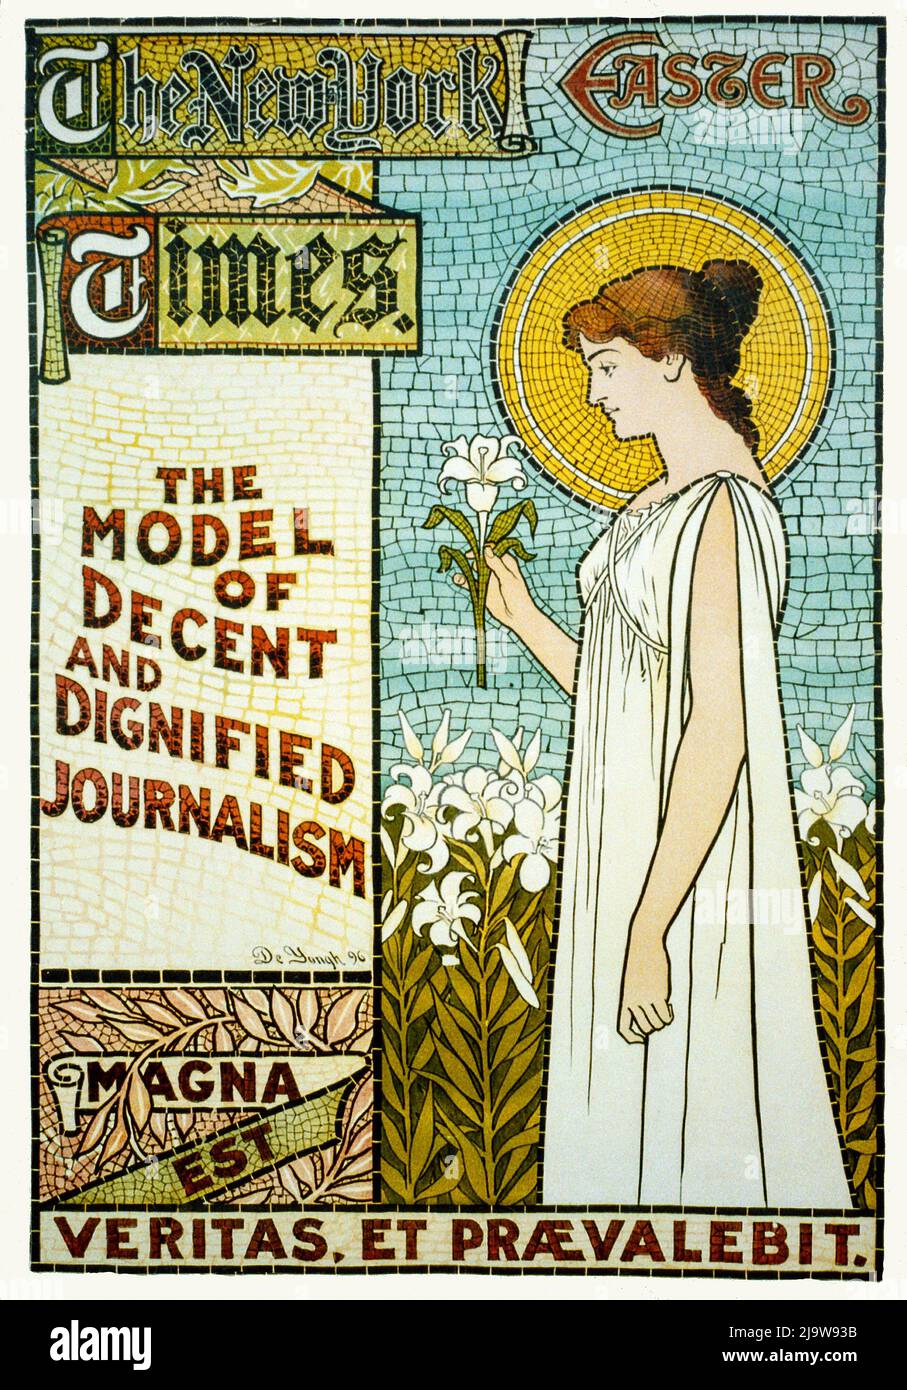 Ein Jugendstil-Plakat für die New York Times, Ostern 1896, das ihr Modell eines anständigen und würdigen Journalismus unterstreicht. Stockfoto